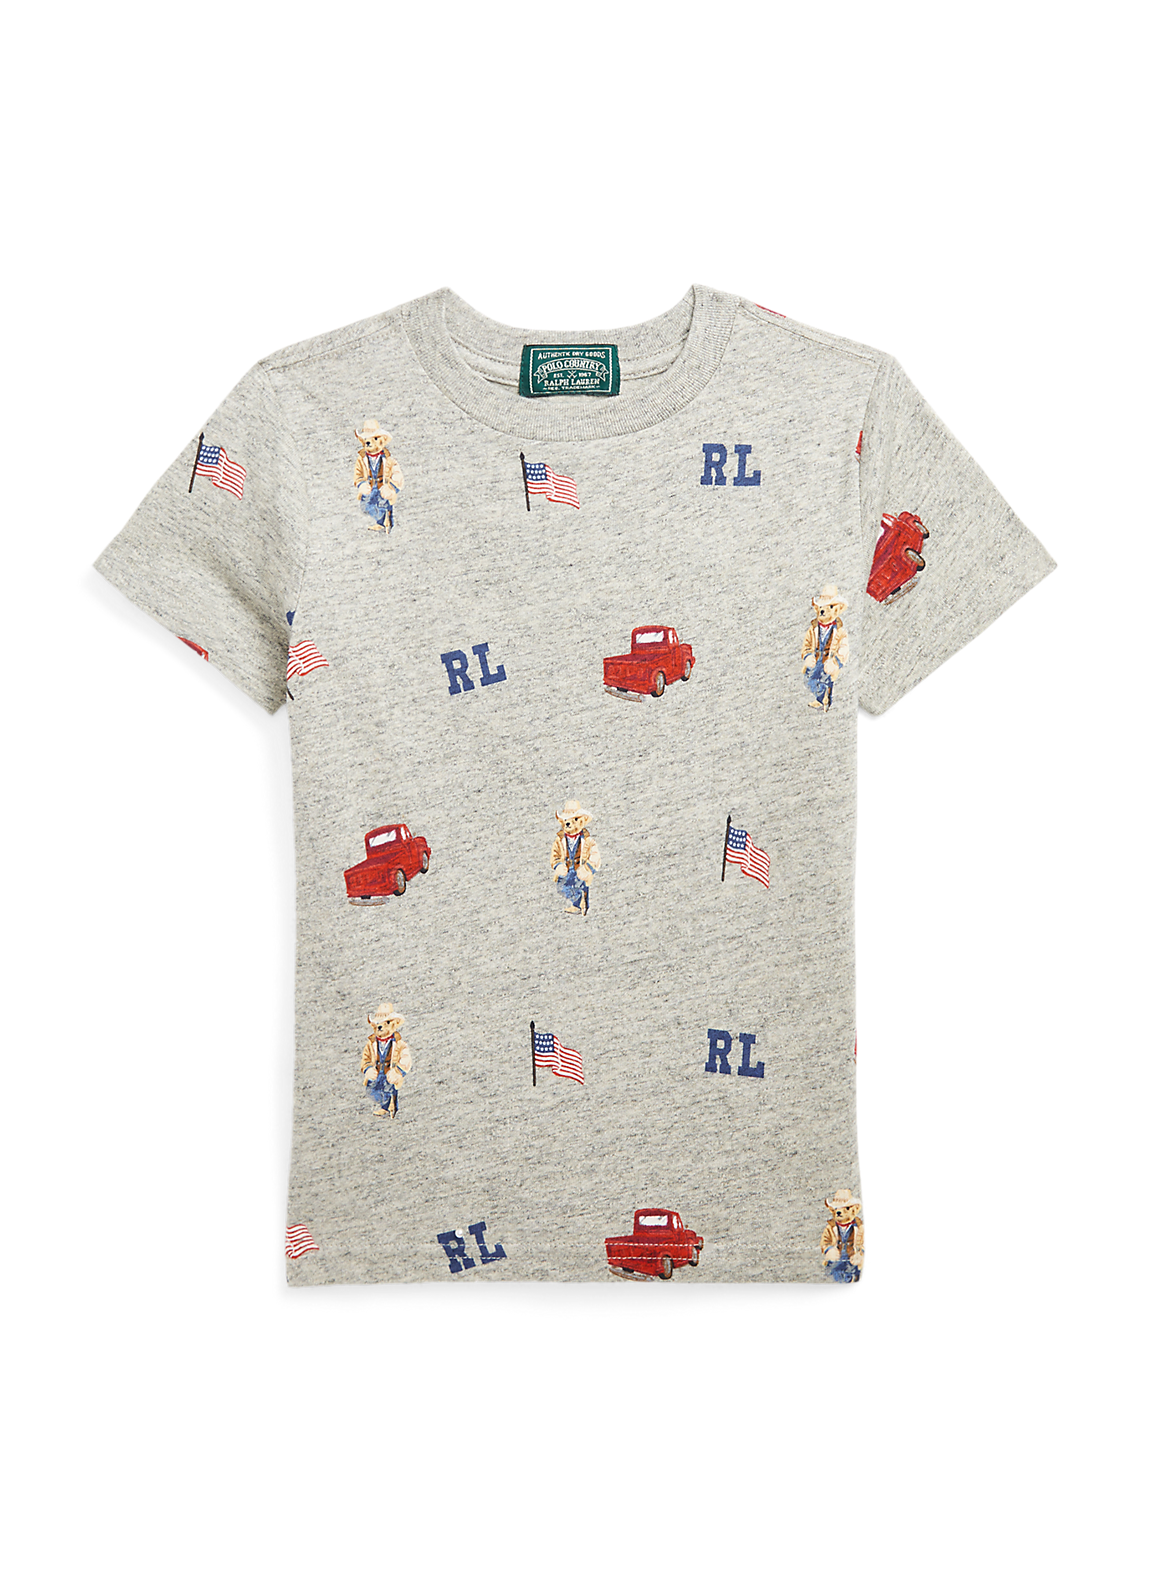 Polo ベア コットン ジャージー Tシャツ